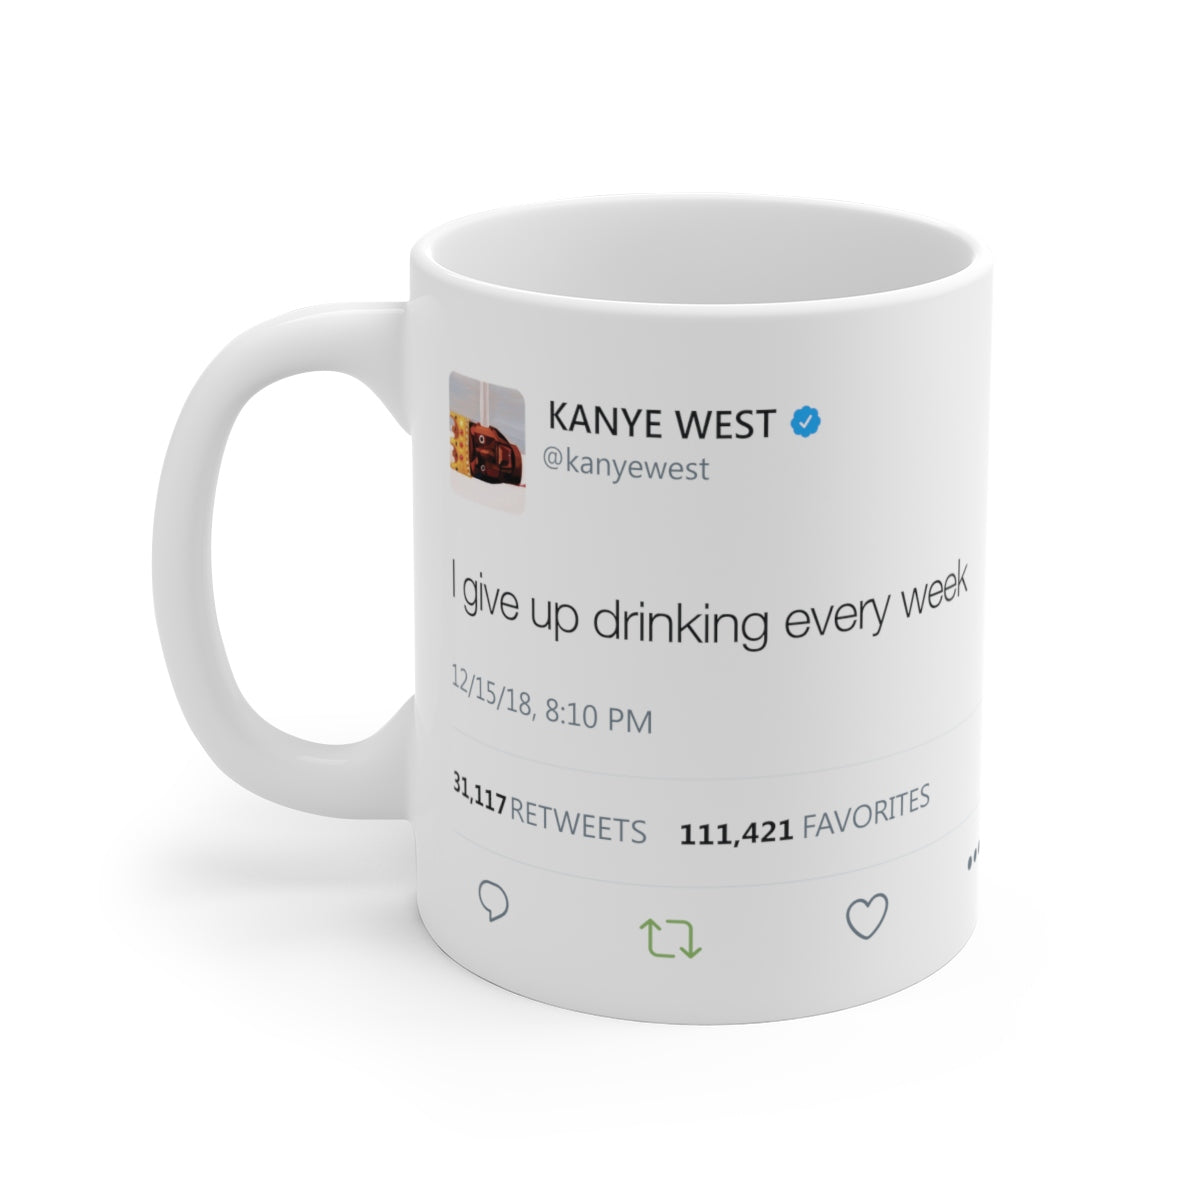 I give up drinking every week Kanye West Mug-11oz-Archethype